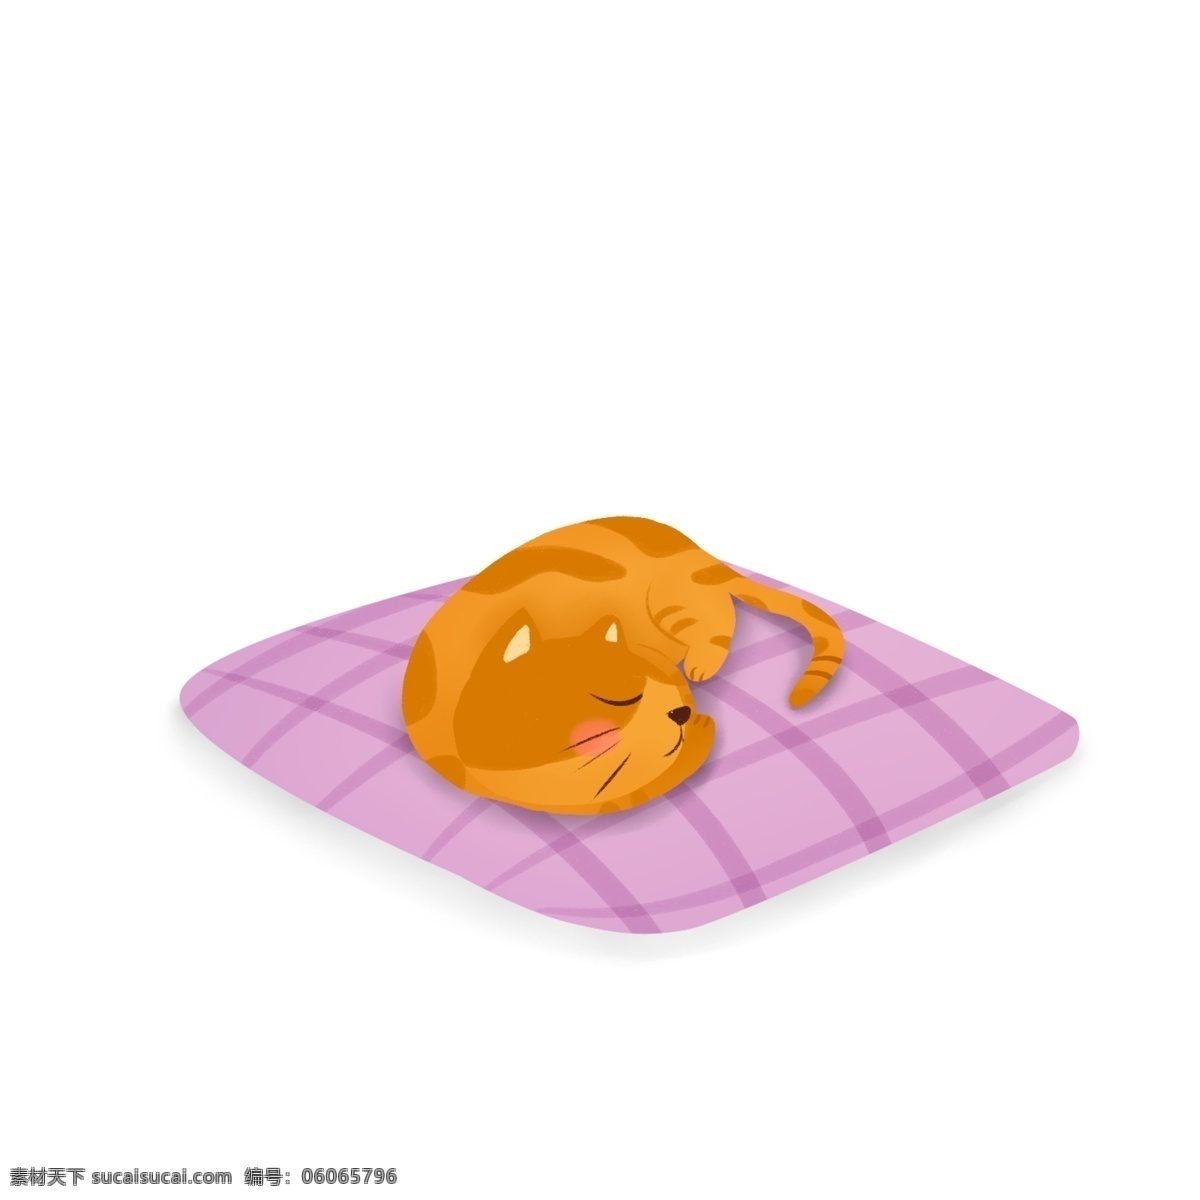 靠枕 上 睡觉 猫咪 温馨 卡通 插画 手绘 萌宠